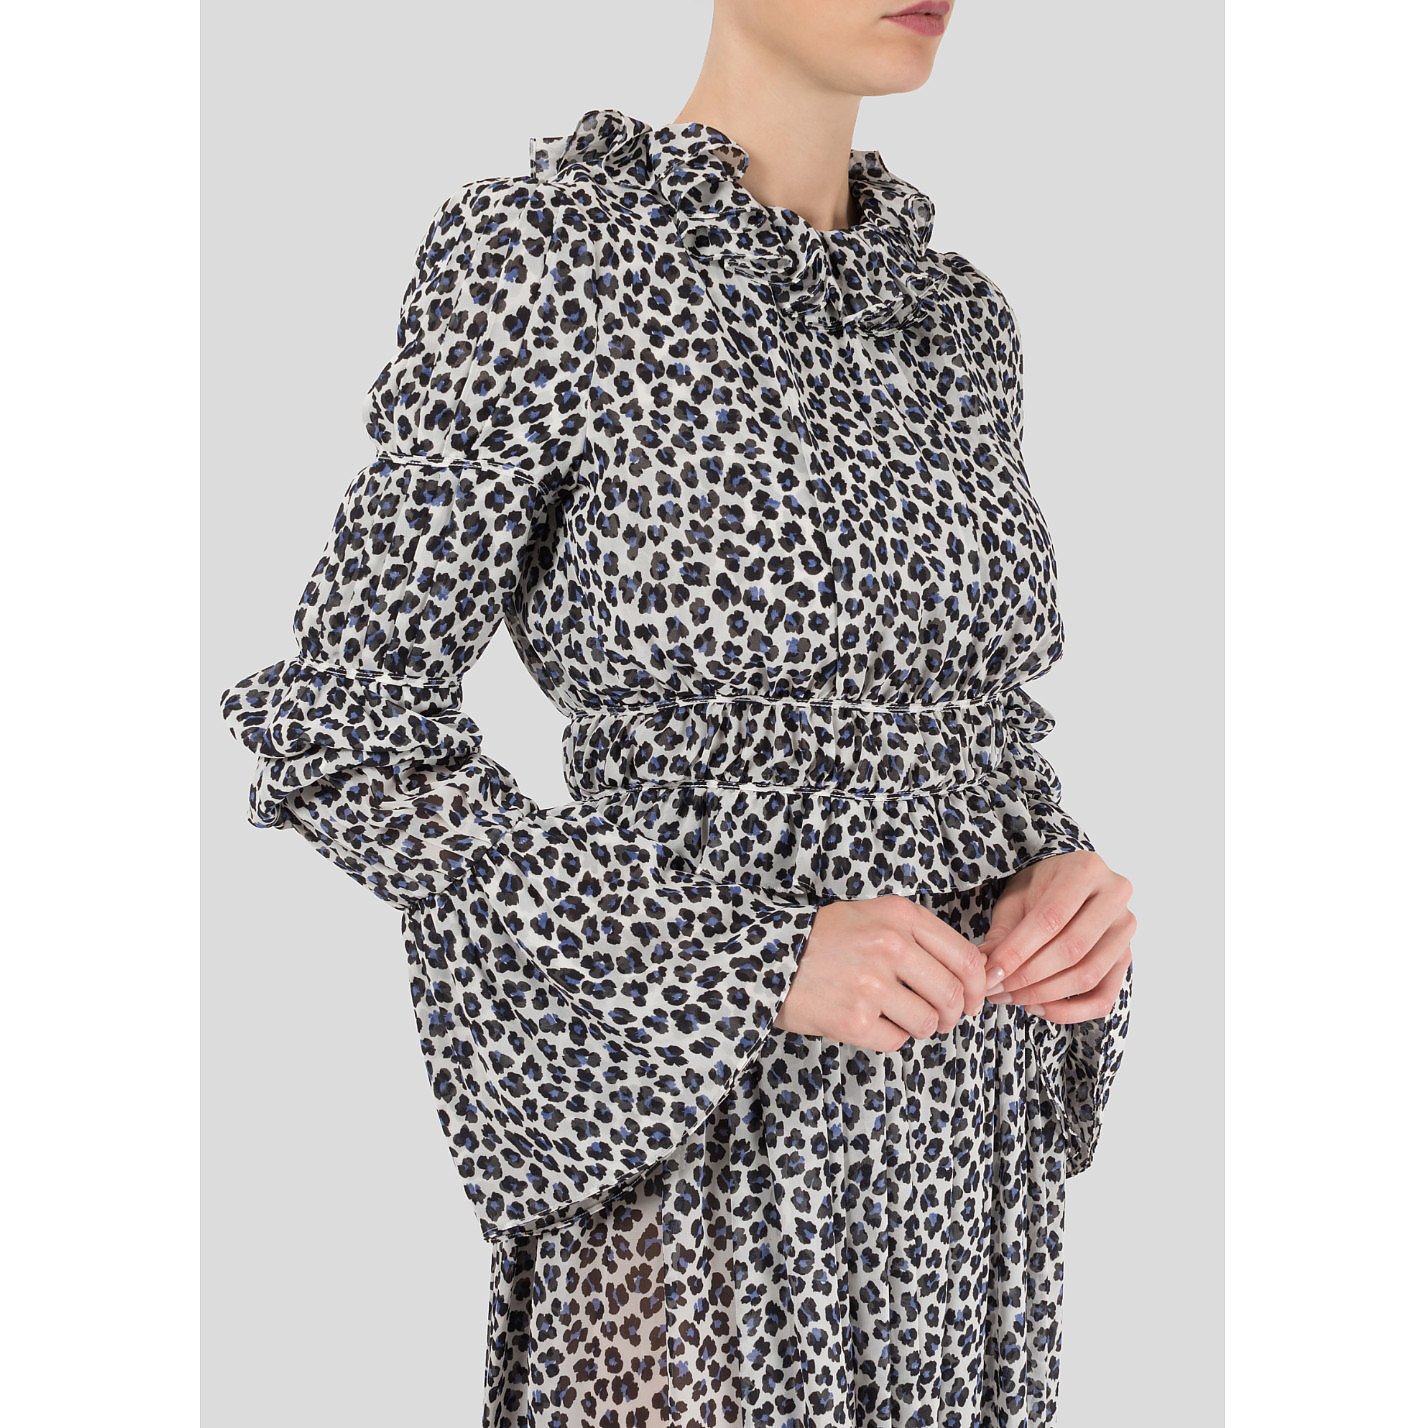 Starsica Leopard Print Ruffle Dress